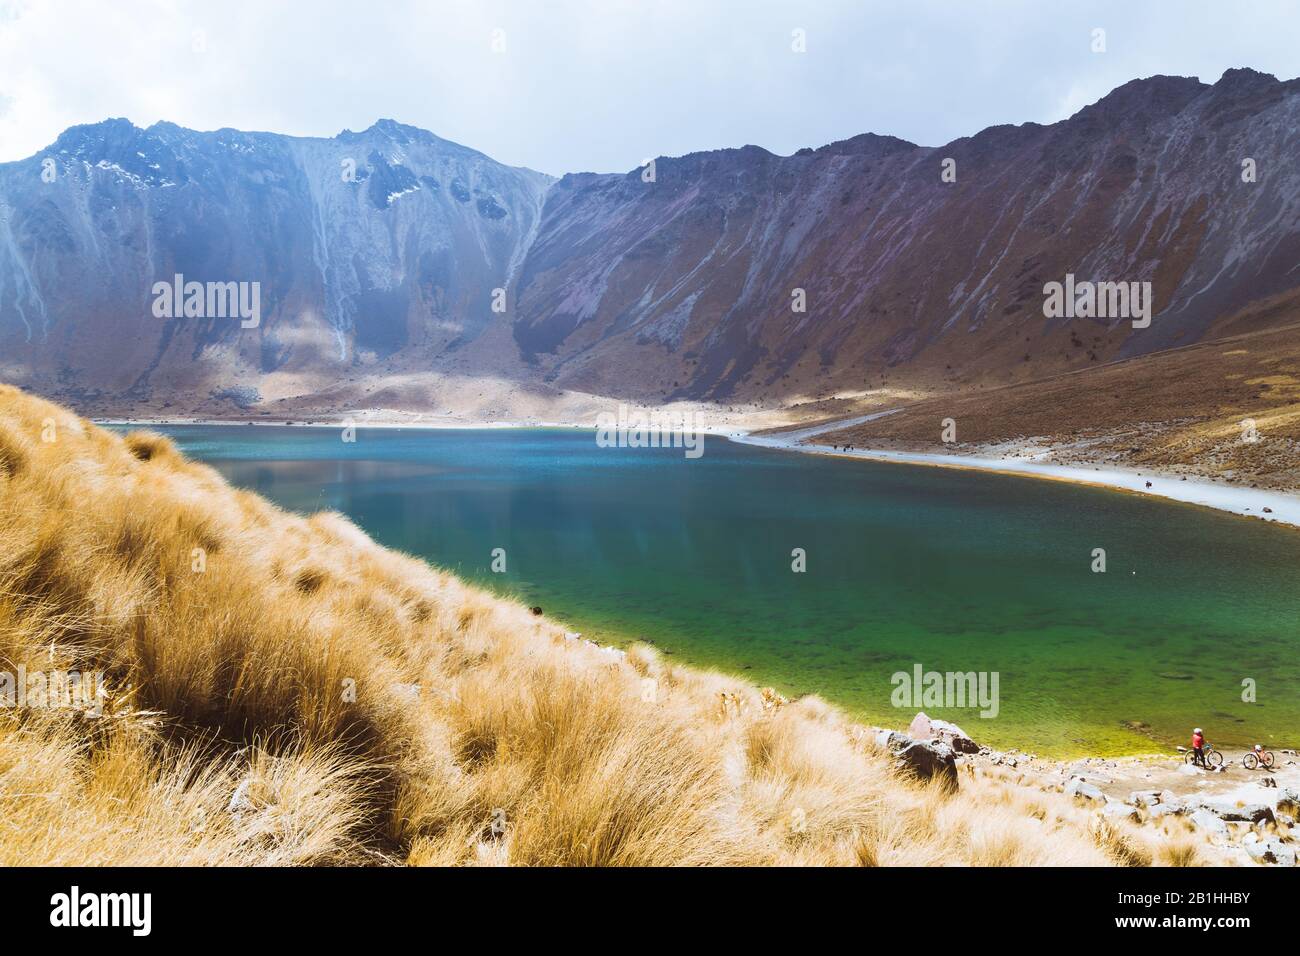 Un lago con aguas cristalinas, rodeado de montañas nevadas y un cielo azul con nubes Foto de stock